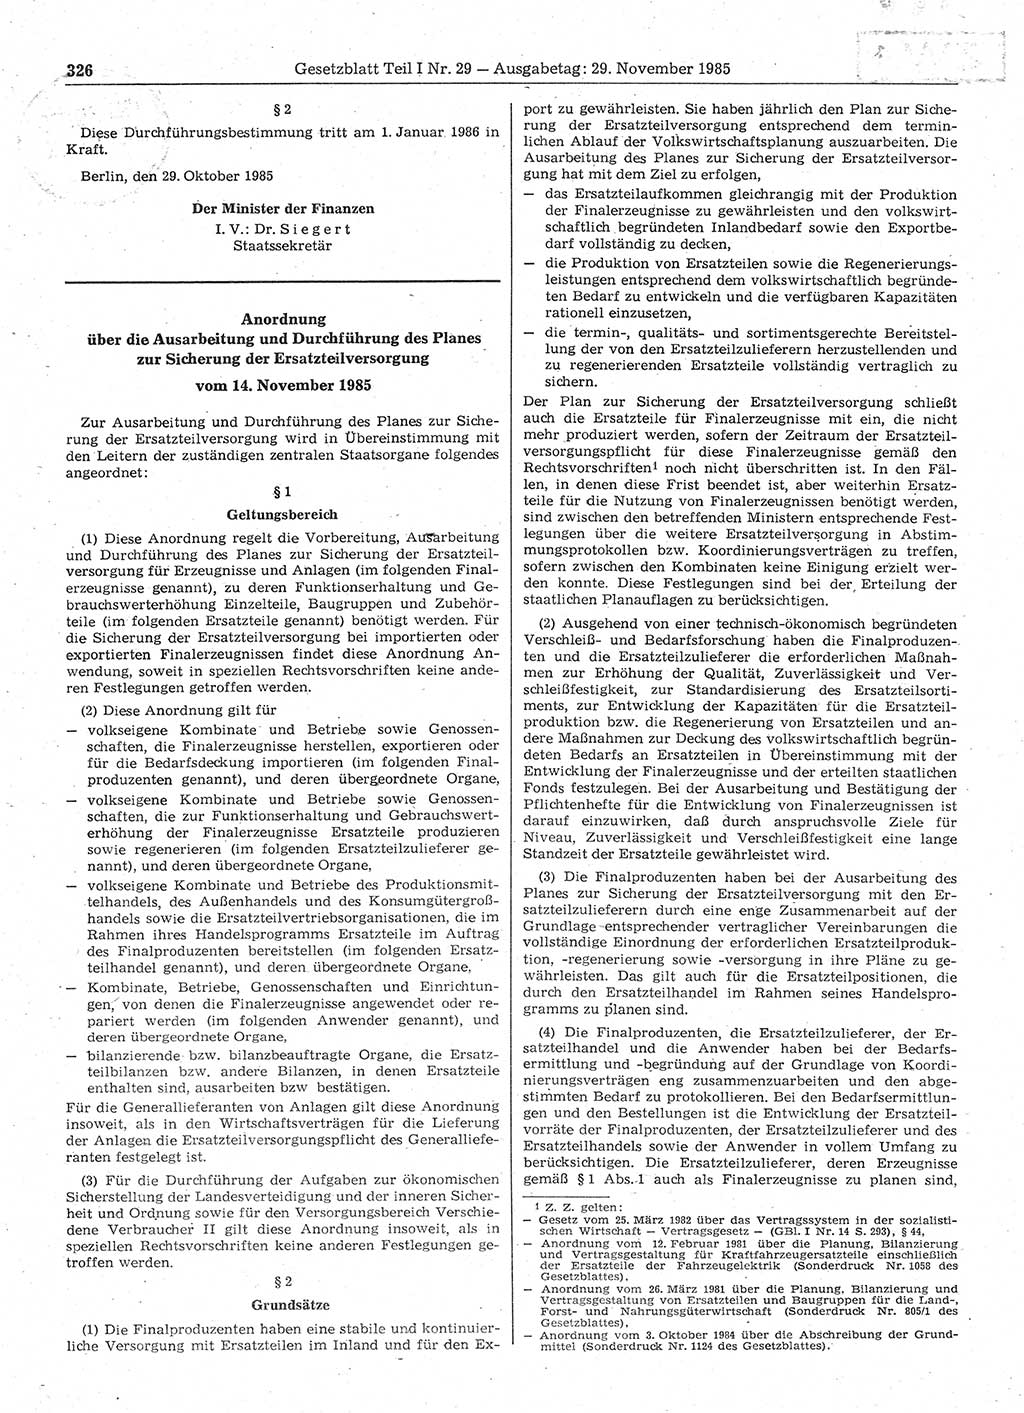 Gesetzblatt (GBl.) der Deutschen Demokratischen Republik (DDR) Teil Ⅰ 1985, Seite 326 (GBl. DDR Ⅰ 1985, S. 326)